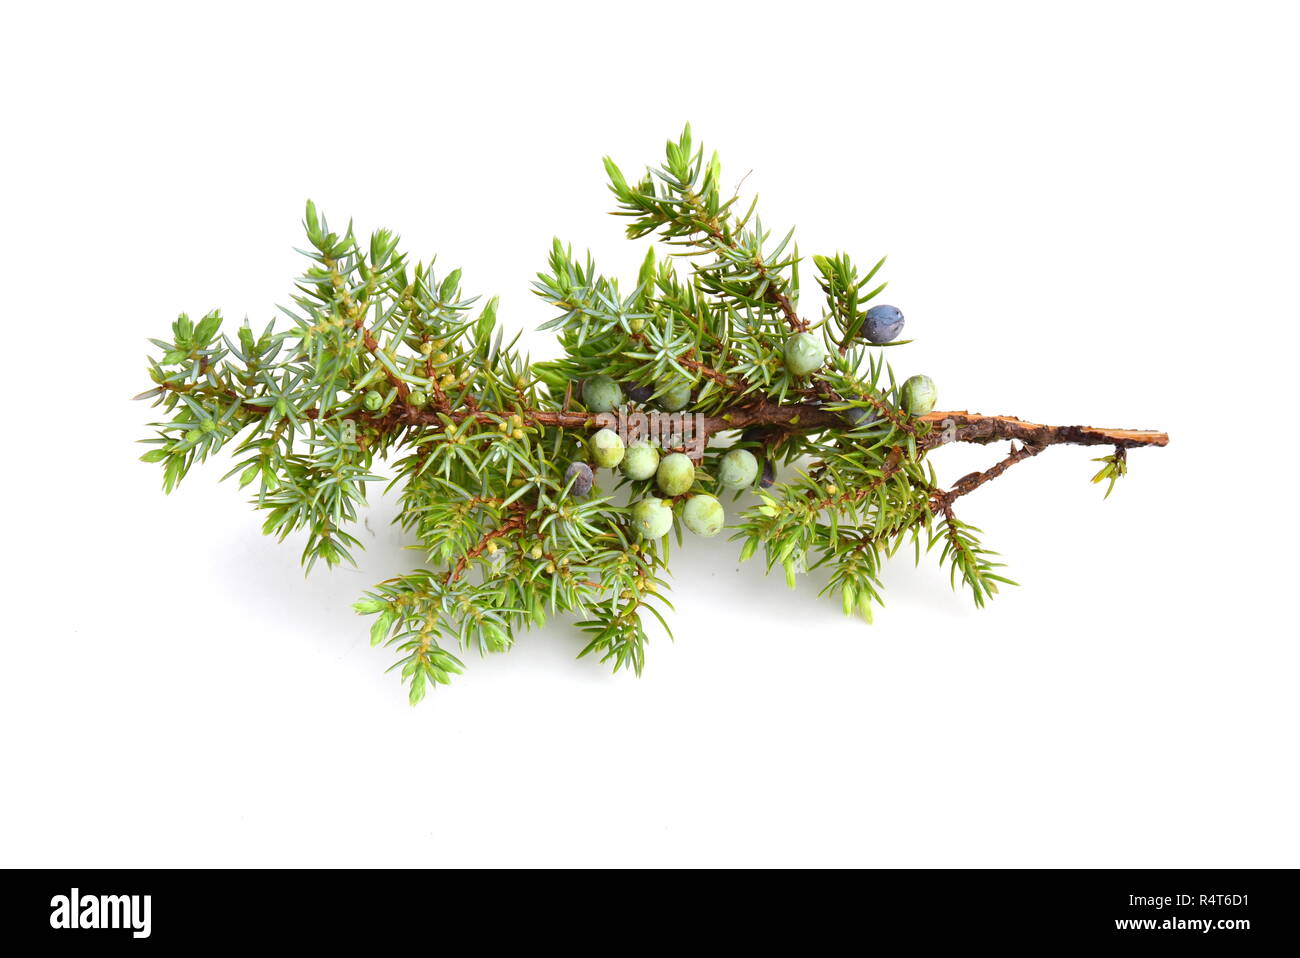 Gemeinsame Wacholder Juniperus communis auf weißem Hintergrund Stockfoto